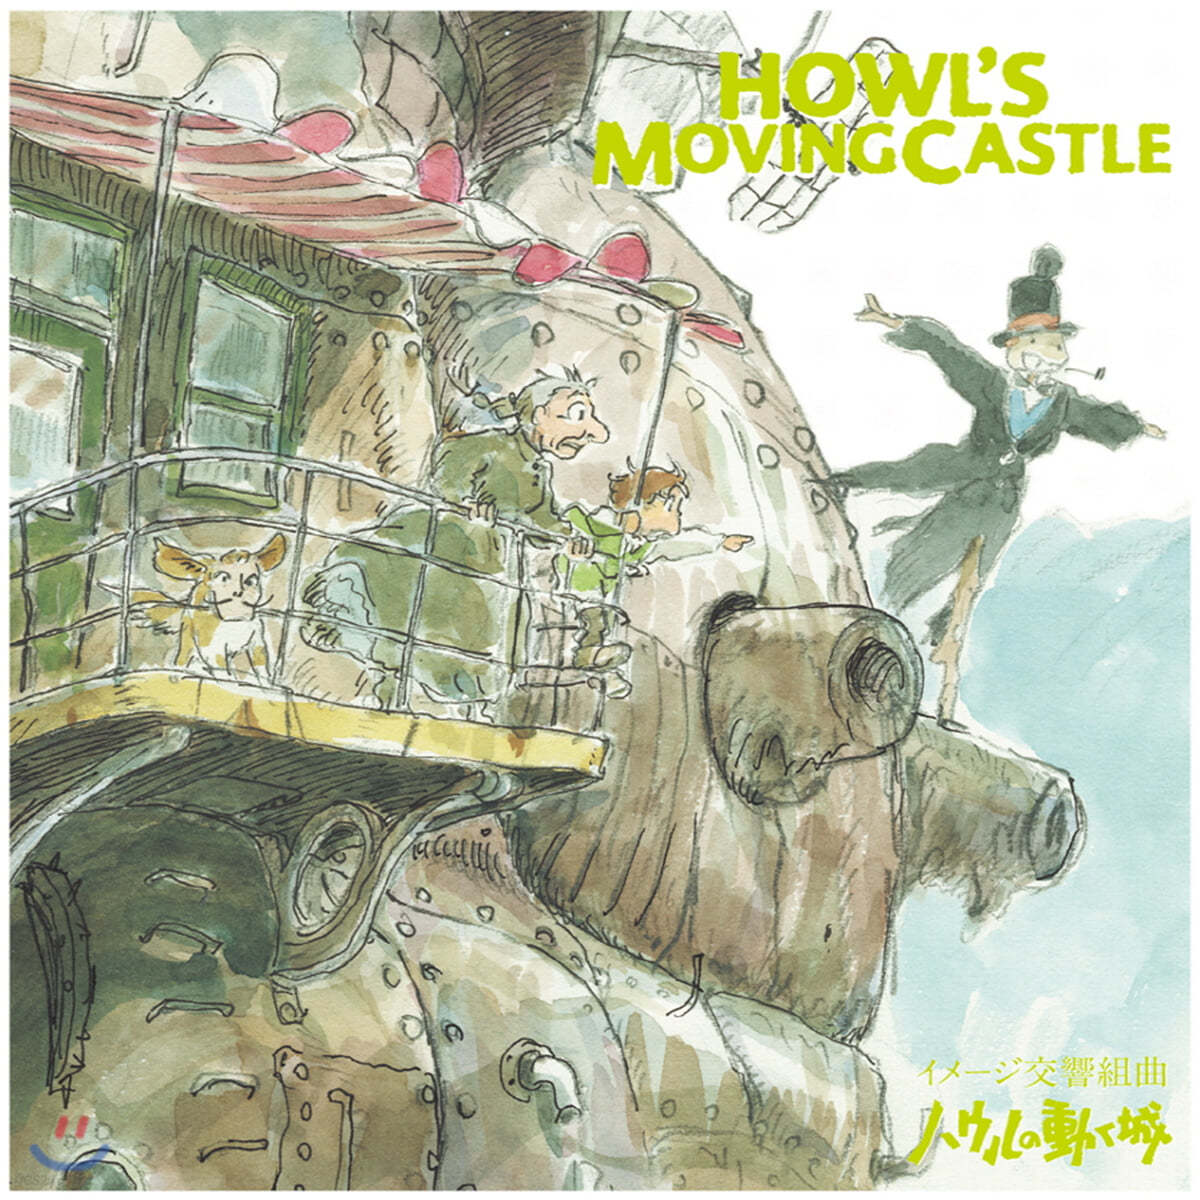 하울의 움직이는 성 이미지 심포닉 모음곡 (Howl's Moving Castle Image Symphonic Suite by Joe Hisaishi 히사이시 조) [LP]